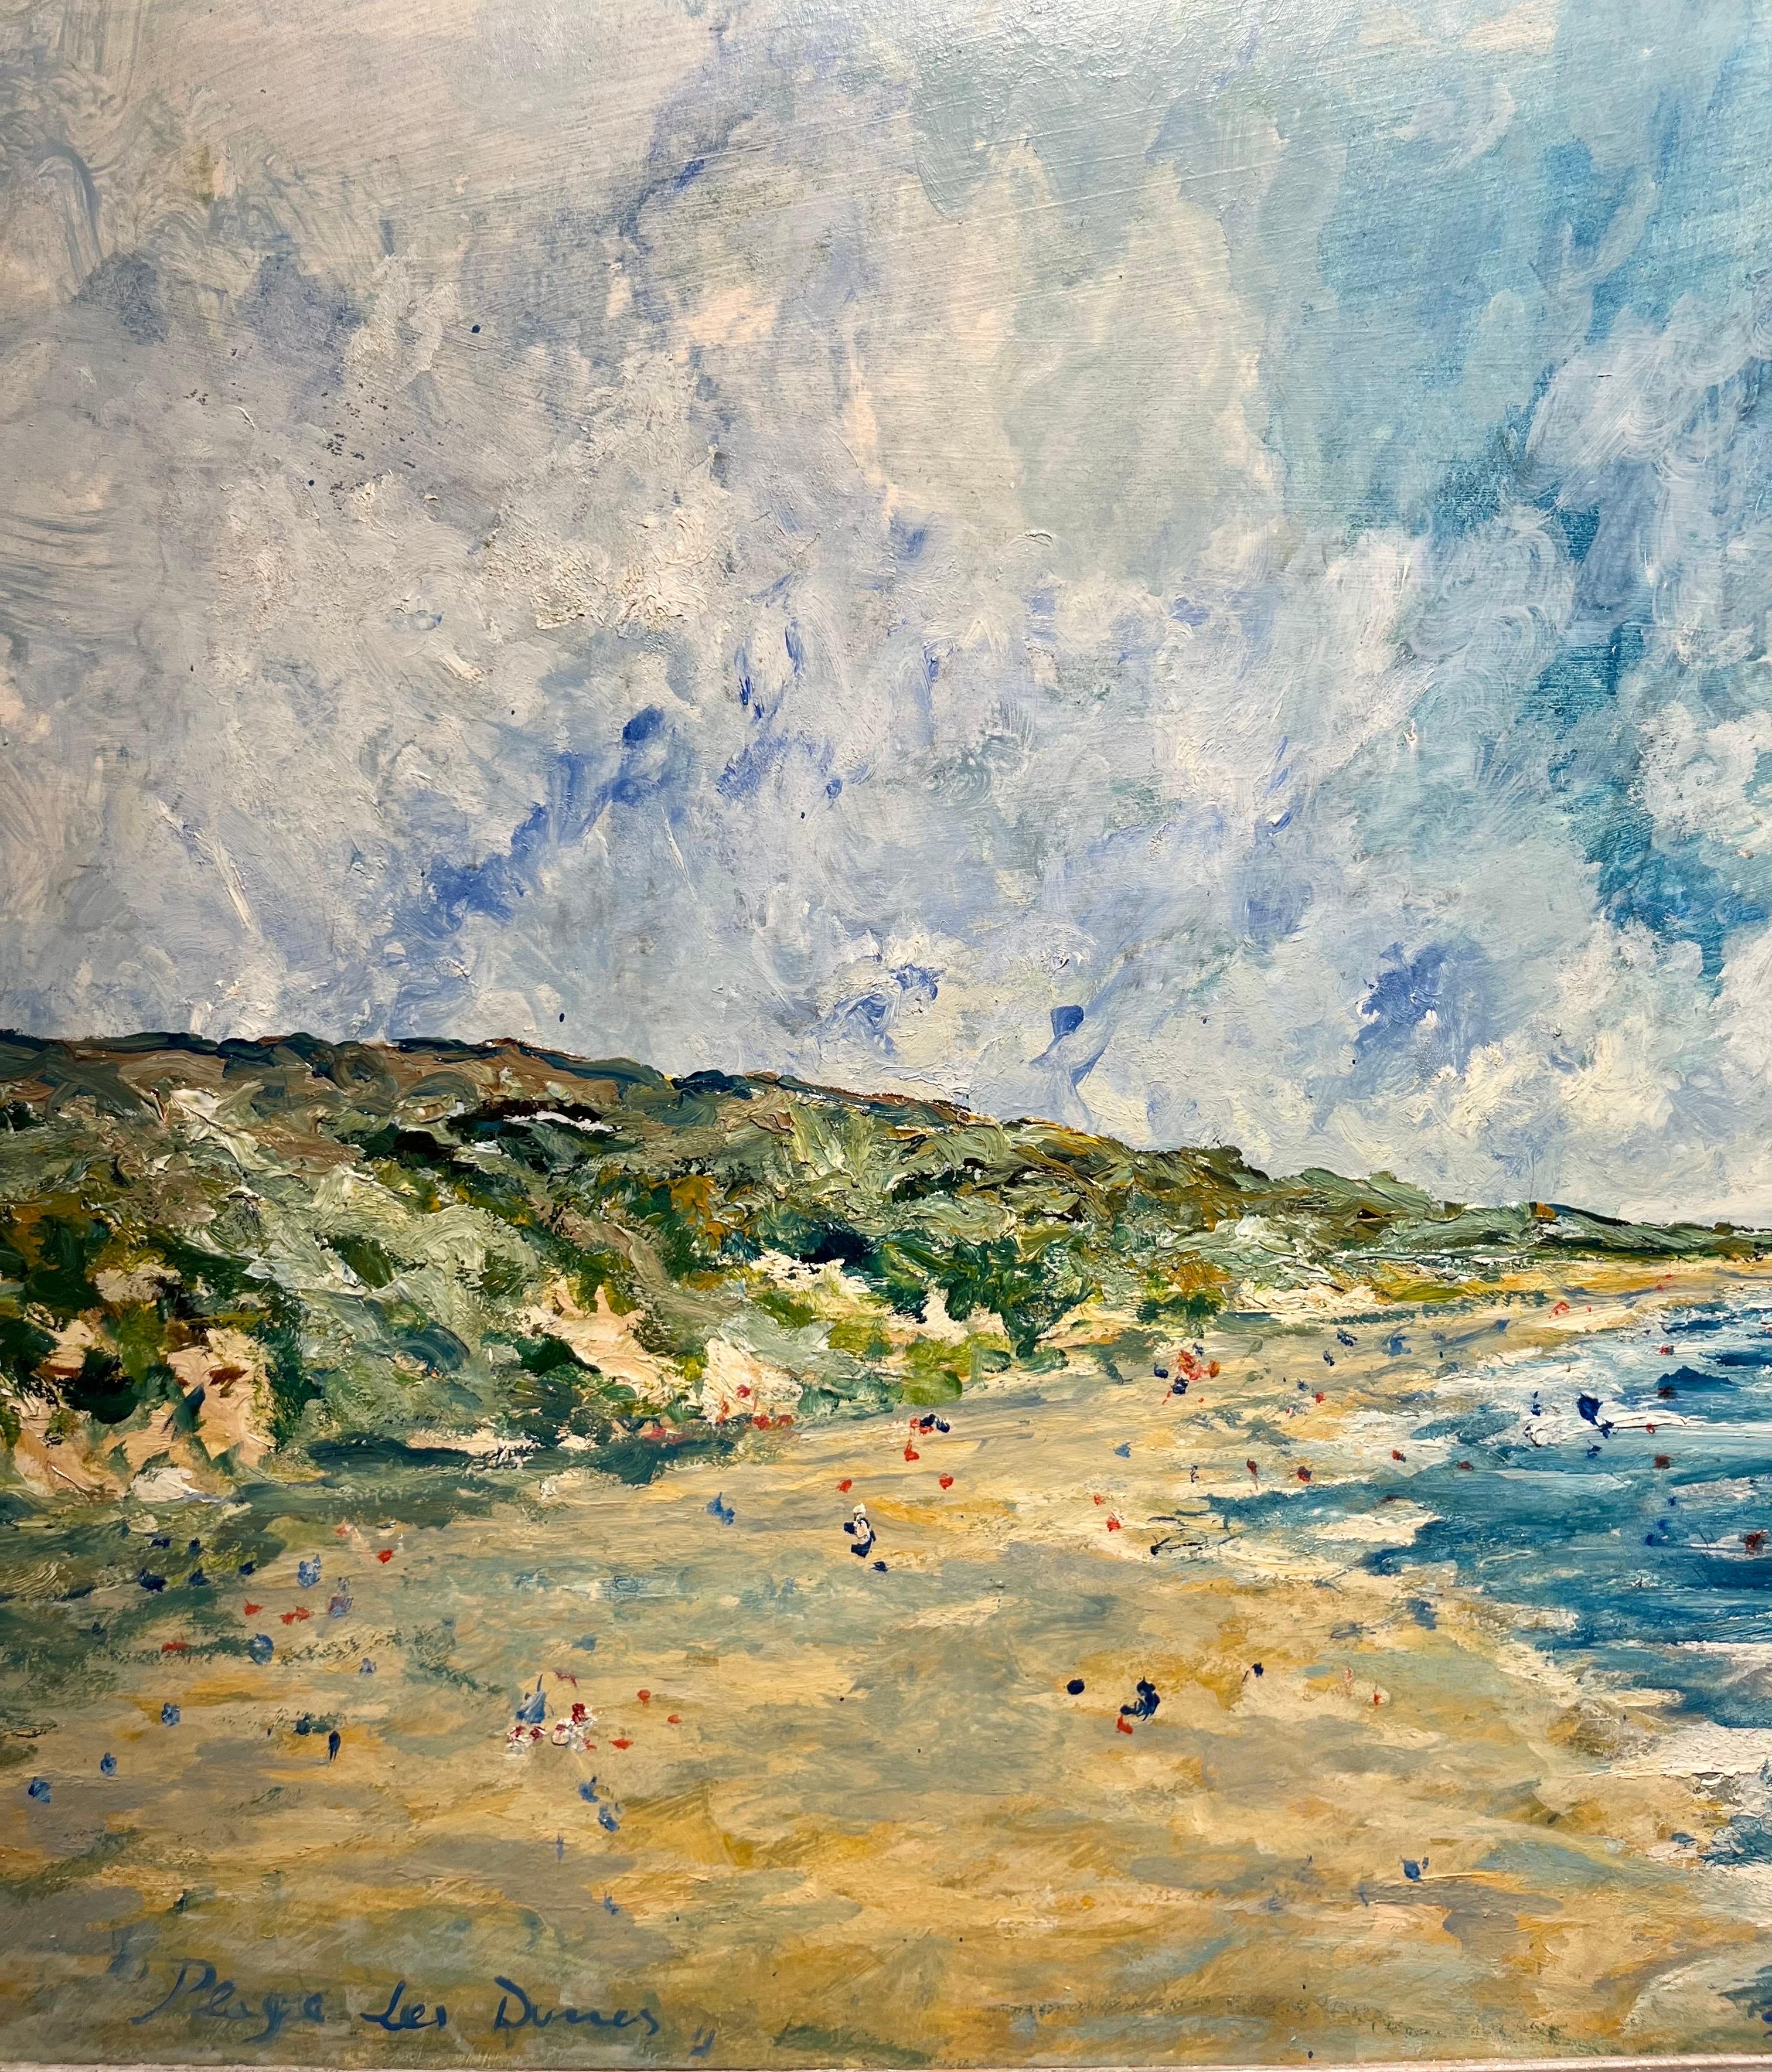 Paesaggio di una spiaggia della Francia del Nord
Spiaggia
Cielo tempestoso
Luce estiva
Blu
Mare